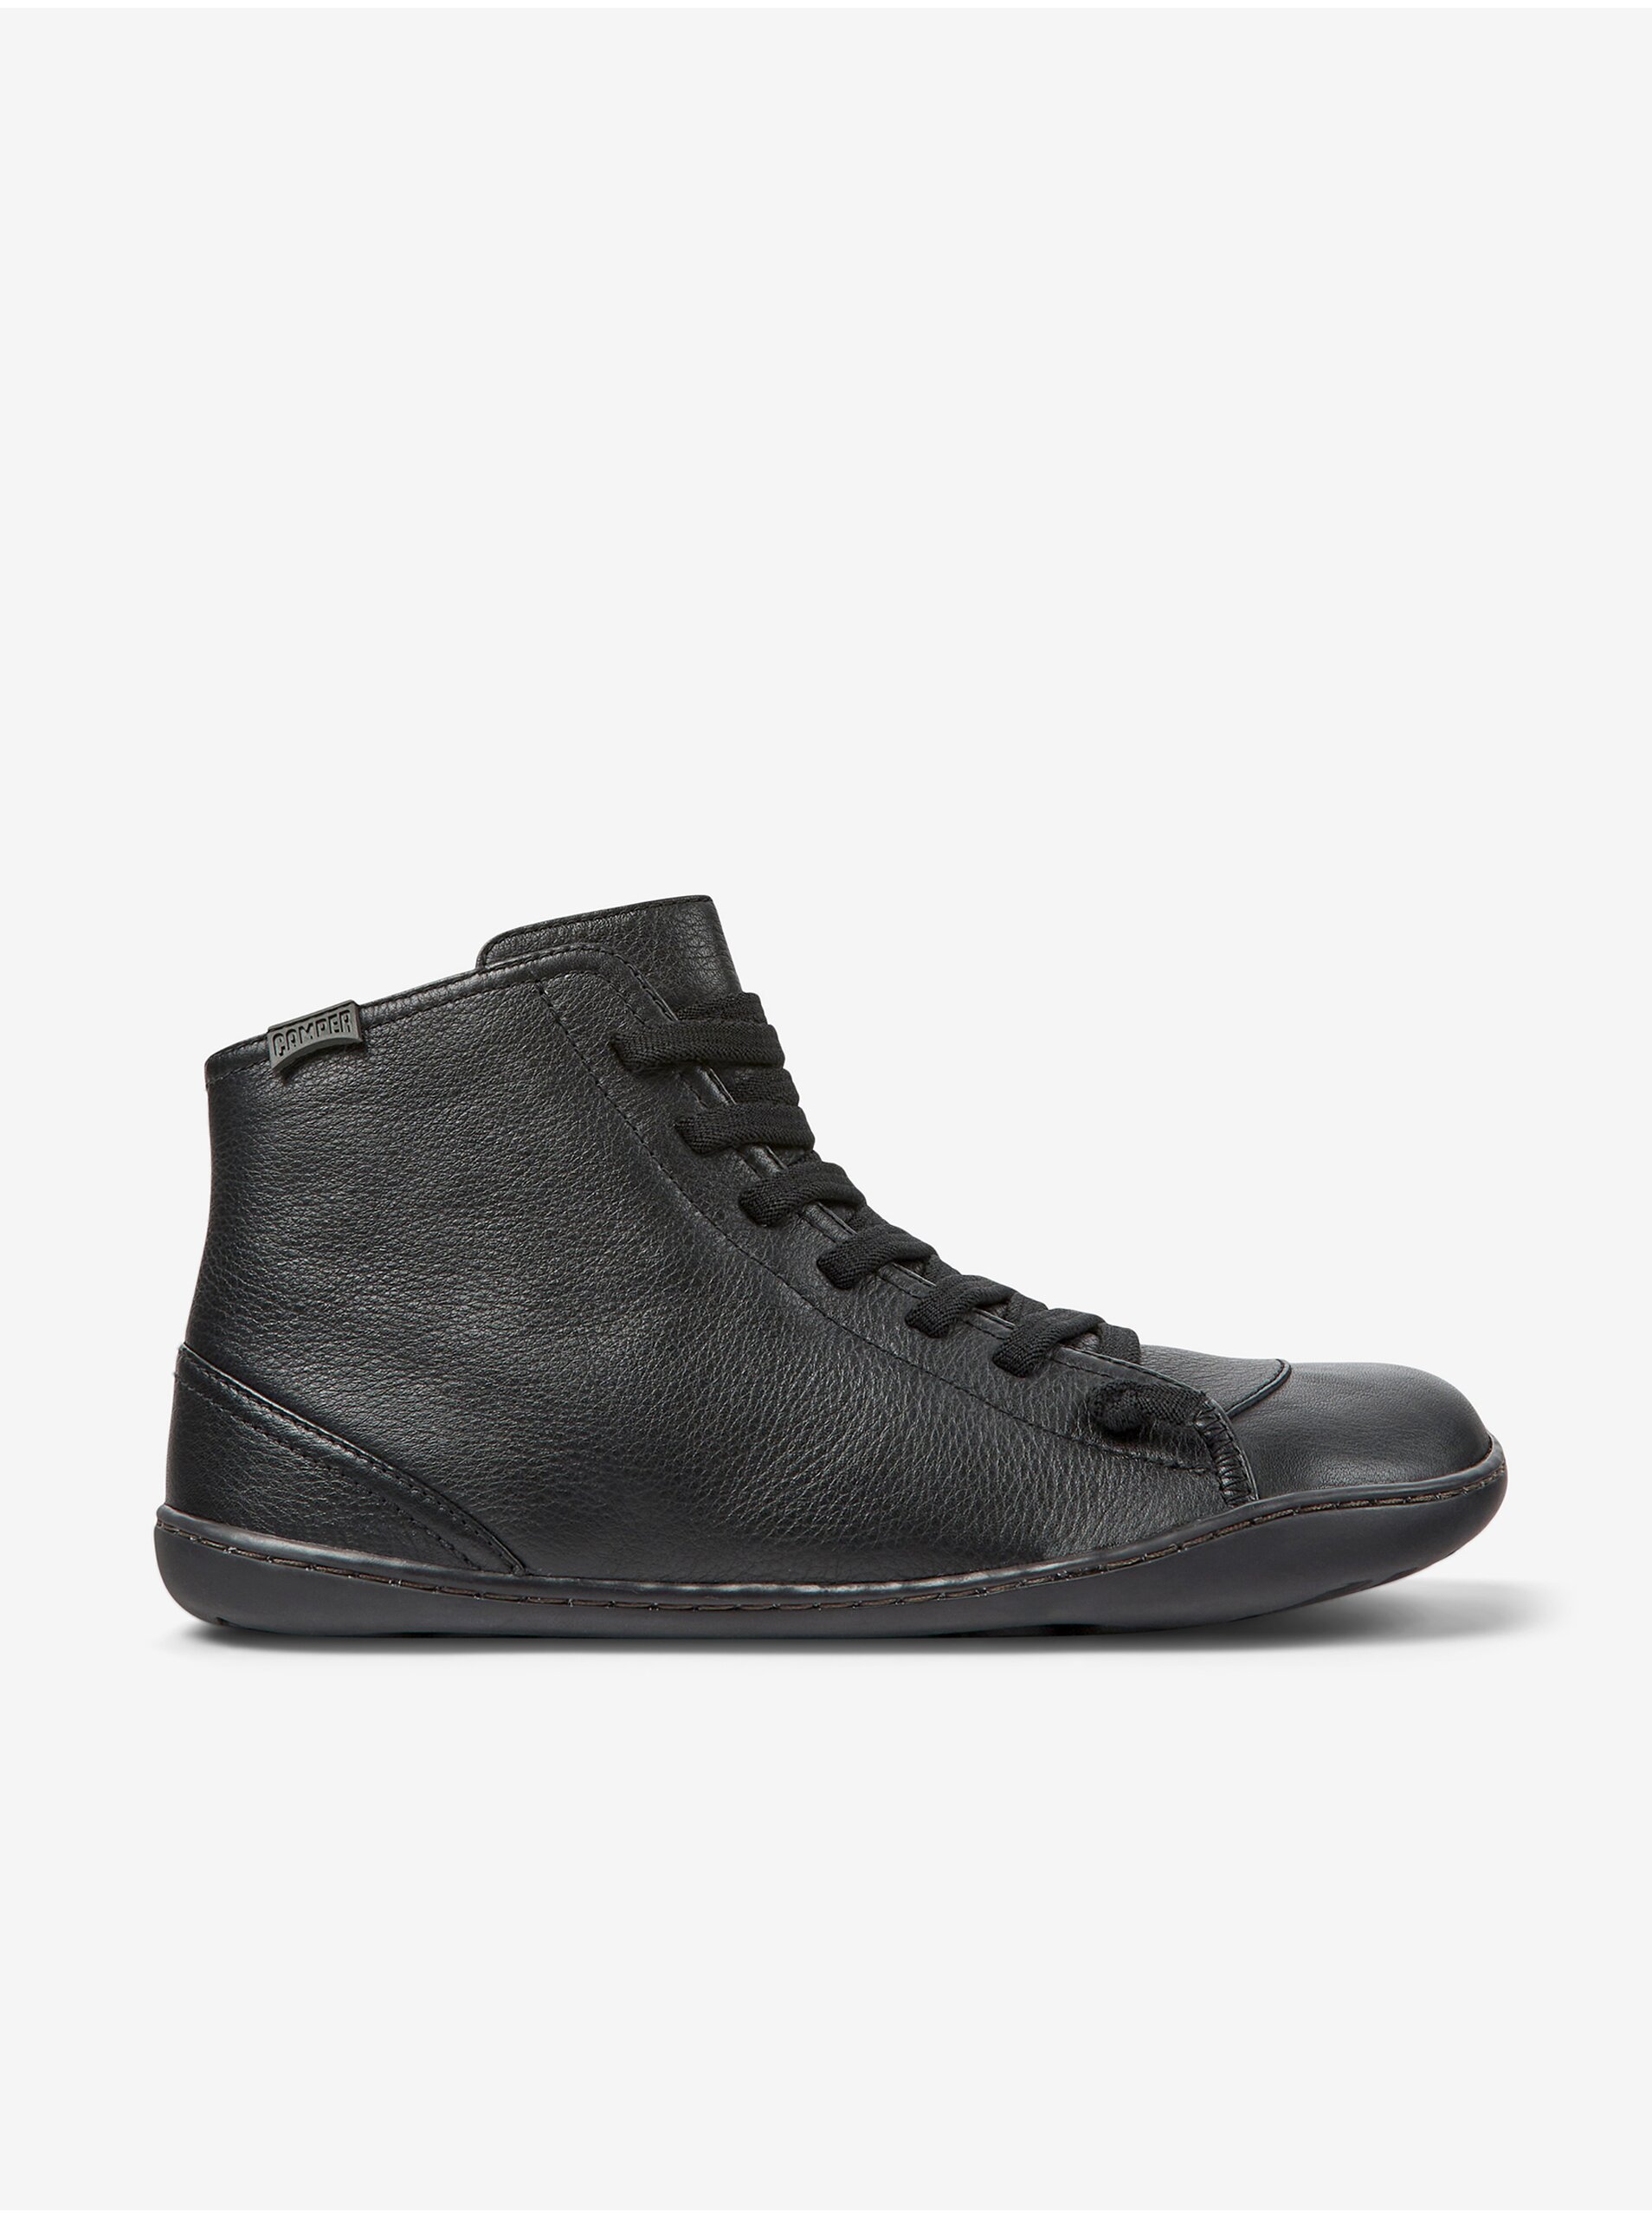 E-shop Čierne dámske kožené členkové topánky Camper Cami